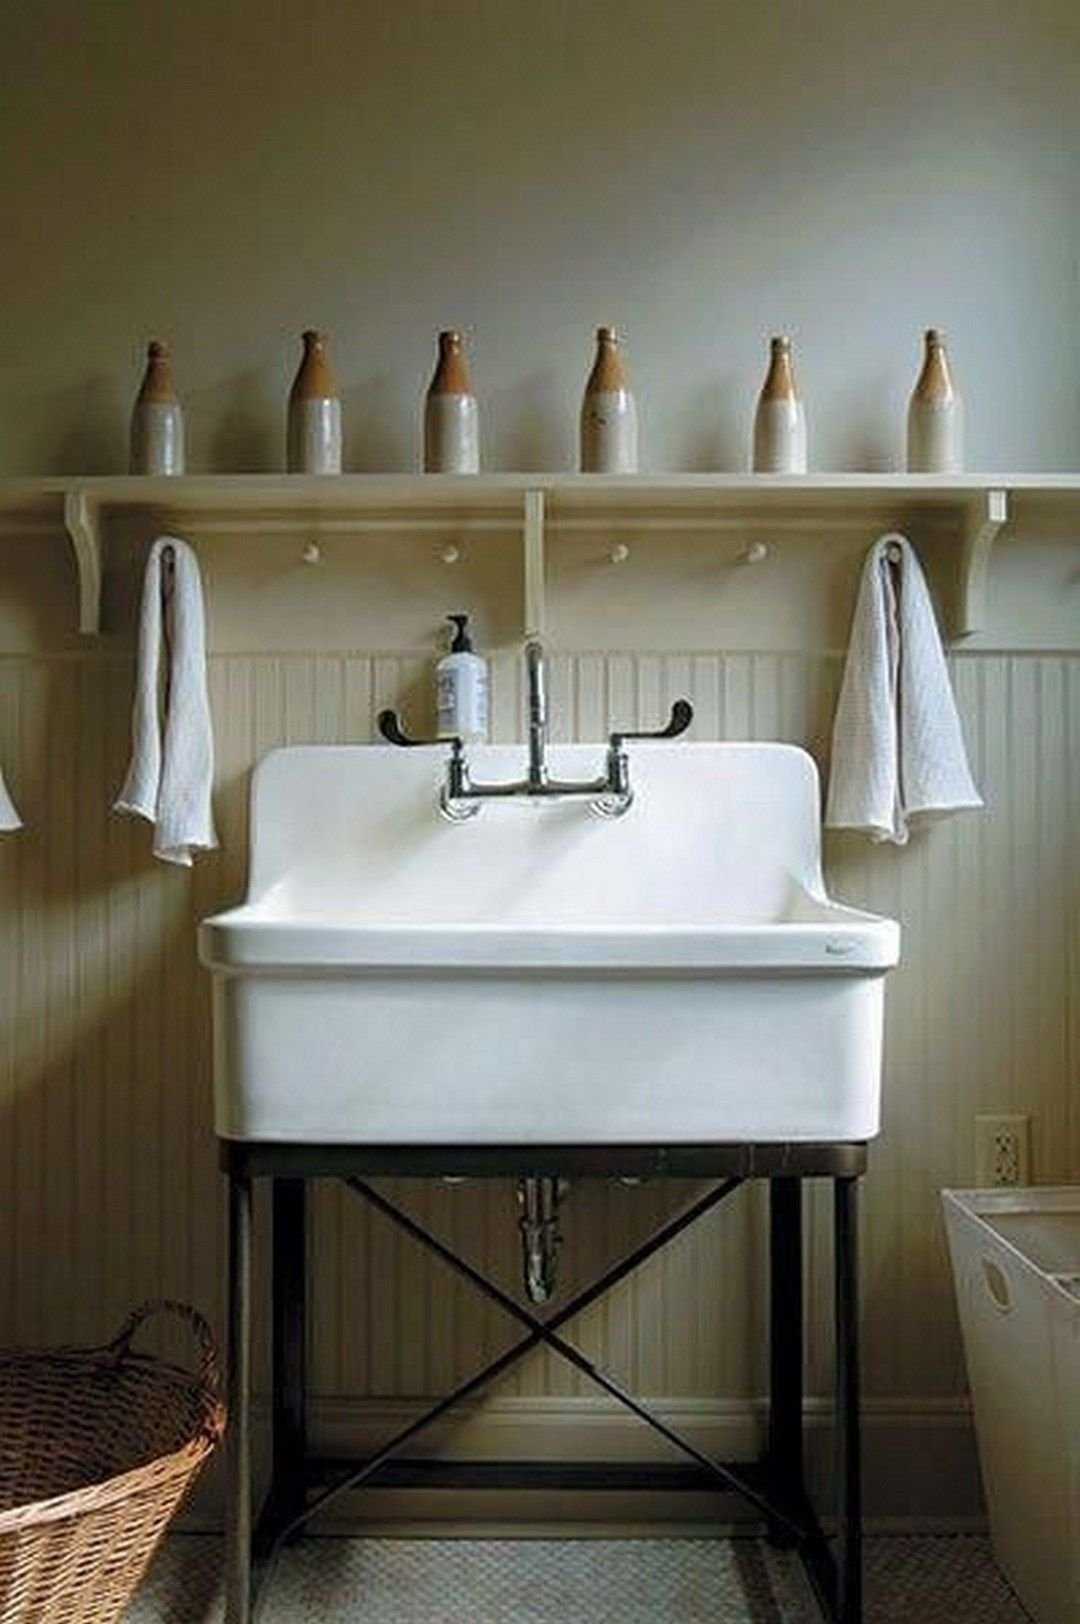 Раковина для постирочной. Раковина Farmhouse Sink для ванны. Раковина Modern Farmhouse. Раковина для прачечной. Раковина для постирочной комнаты.